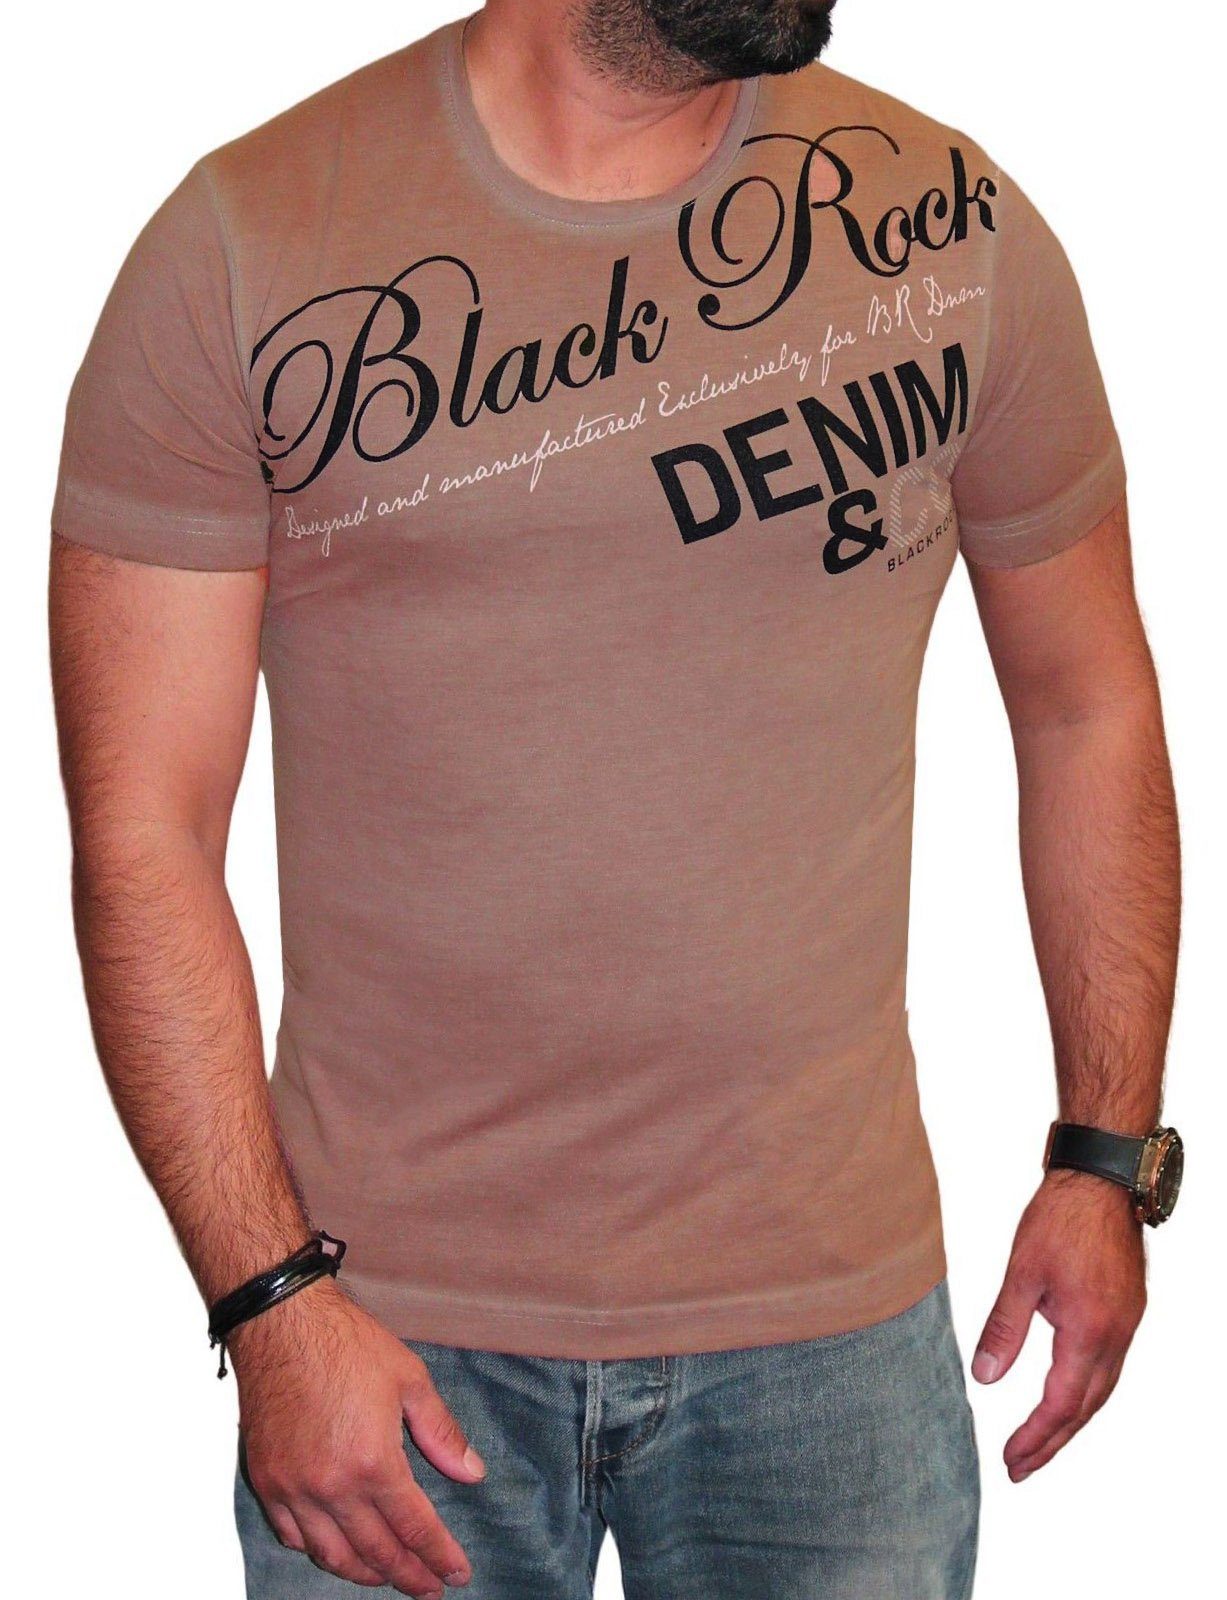 BLACKROCK T-Shirt Herren T-Shirt Casual Freizeitshirt Sommer Vintage Festival Braun